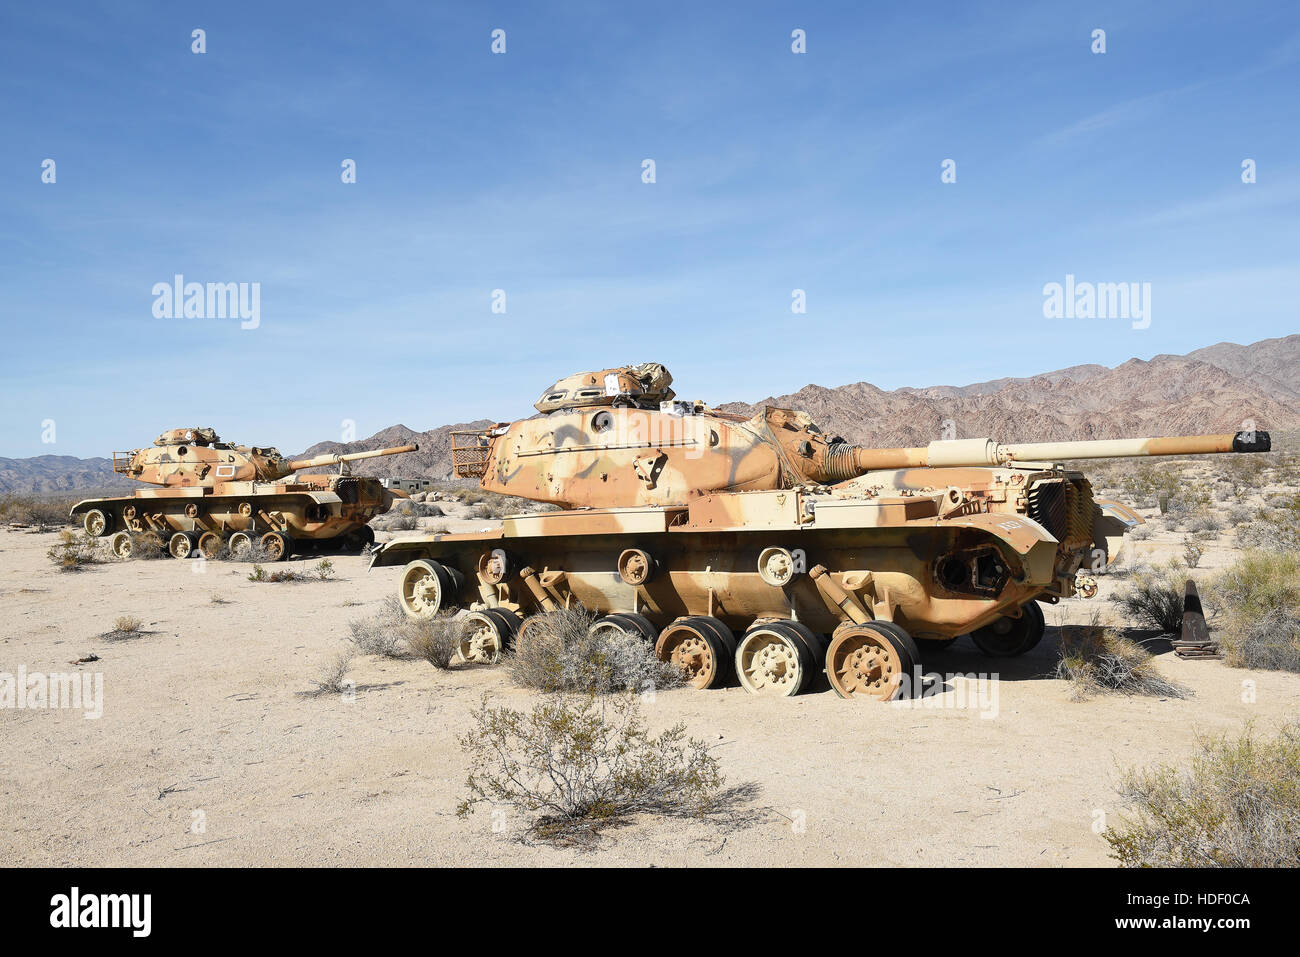 Sommet CHIRIACO, CA - le 10 décembre 2016 : deux chars M60. Les épaves de véhicules sont à la General Patton Memorial Museum dans le désert californien. Banque D'Images